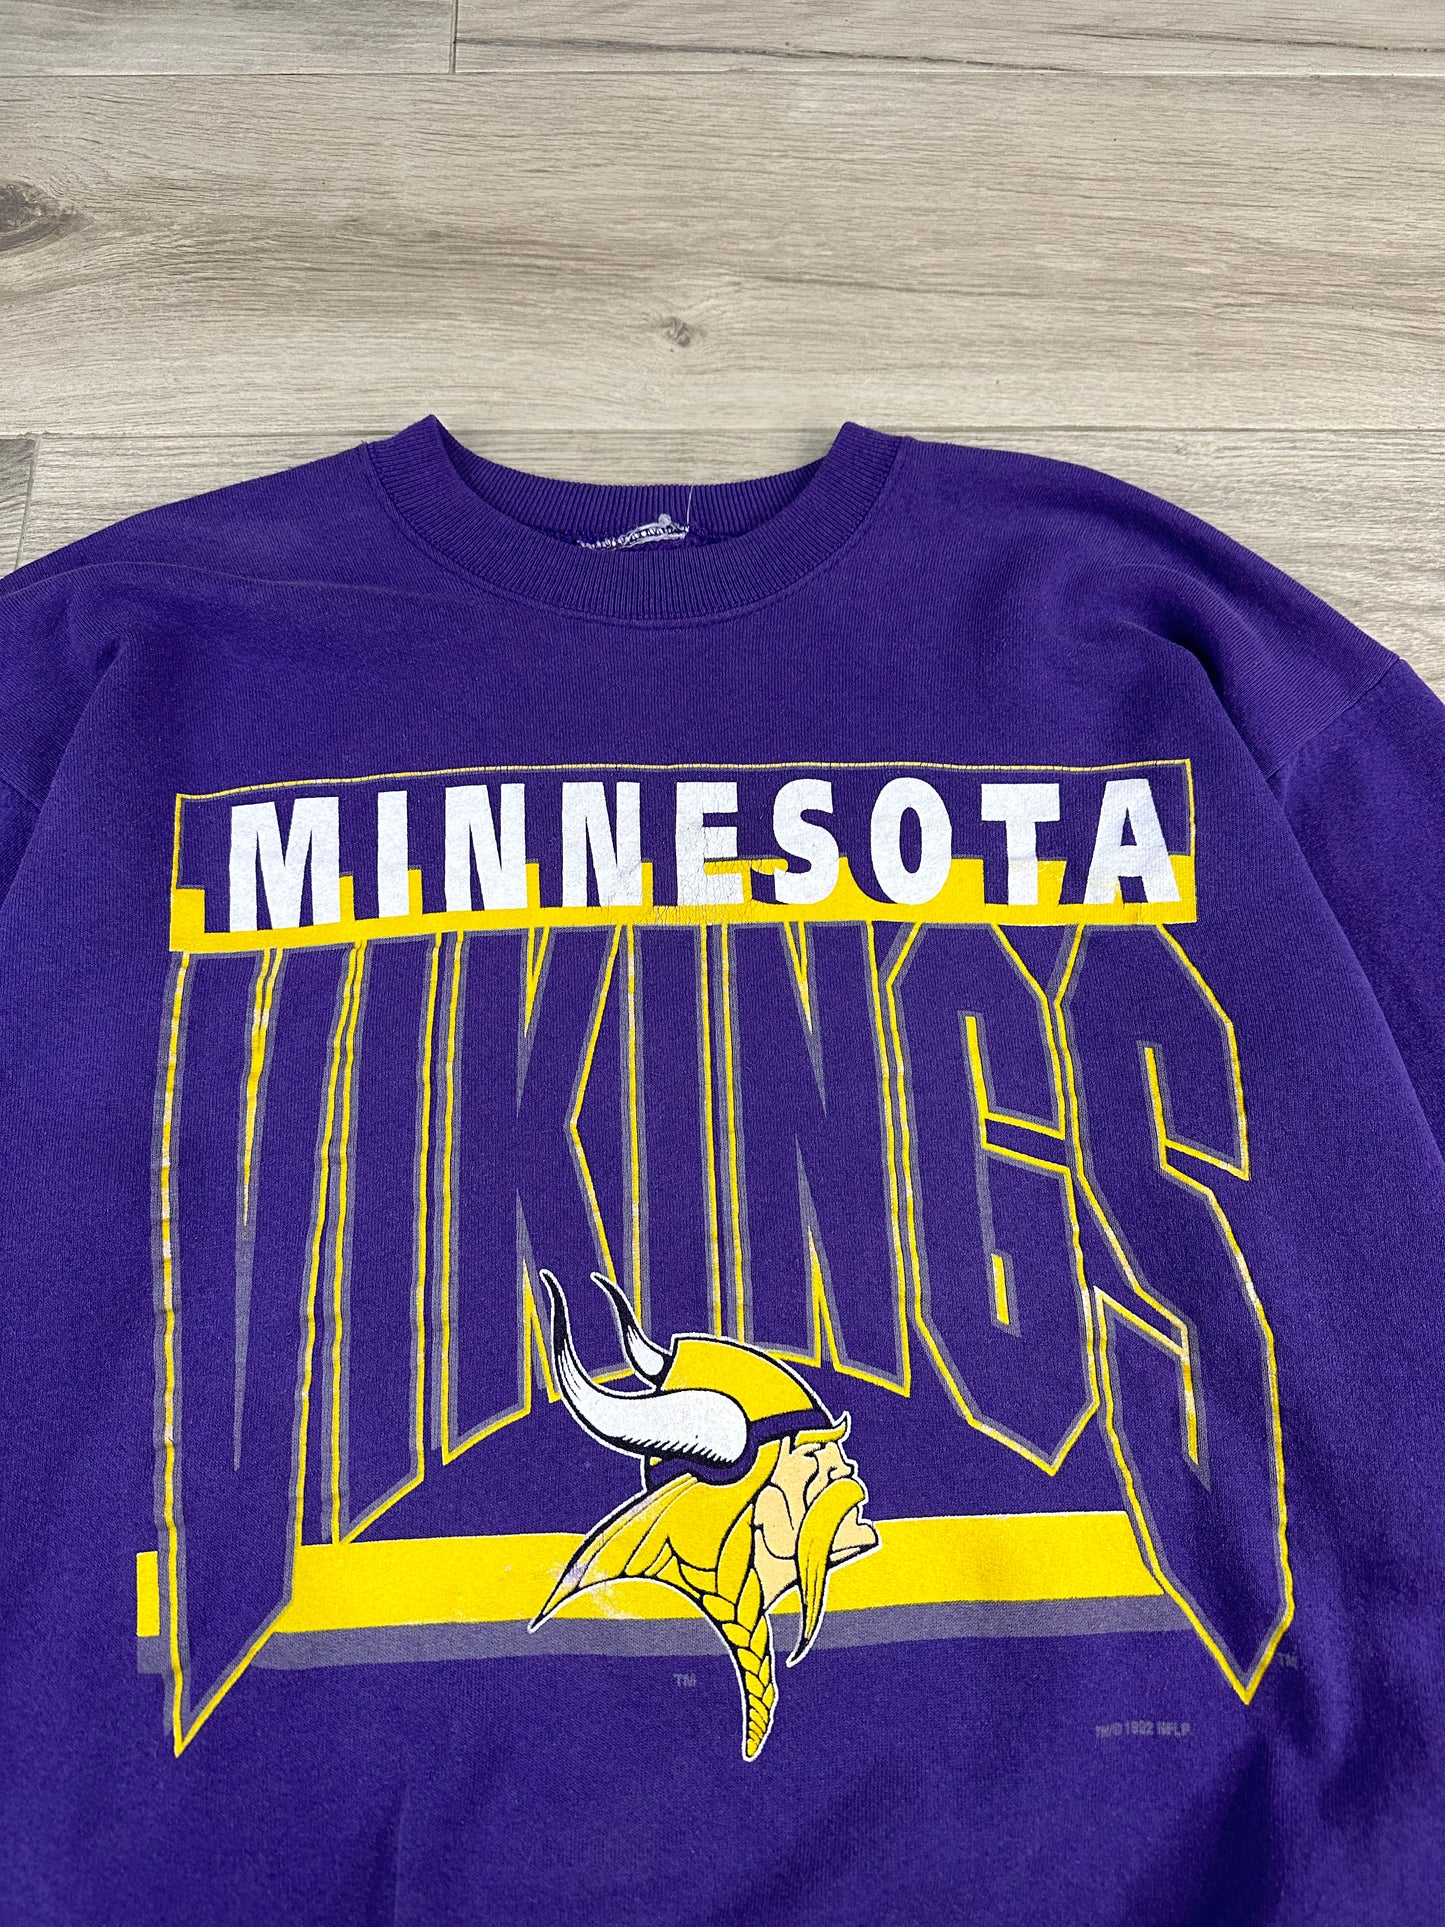 Minnesota Vikings Crew- L